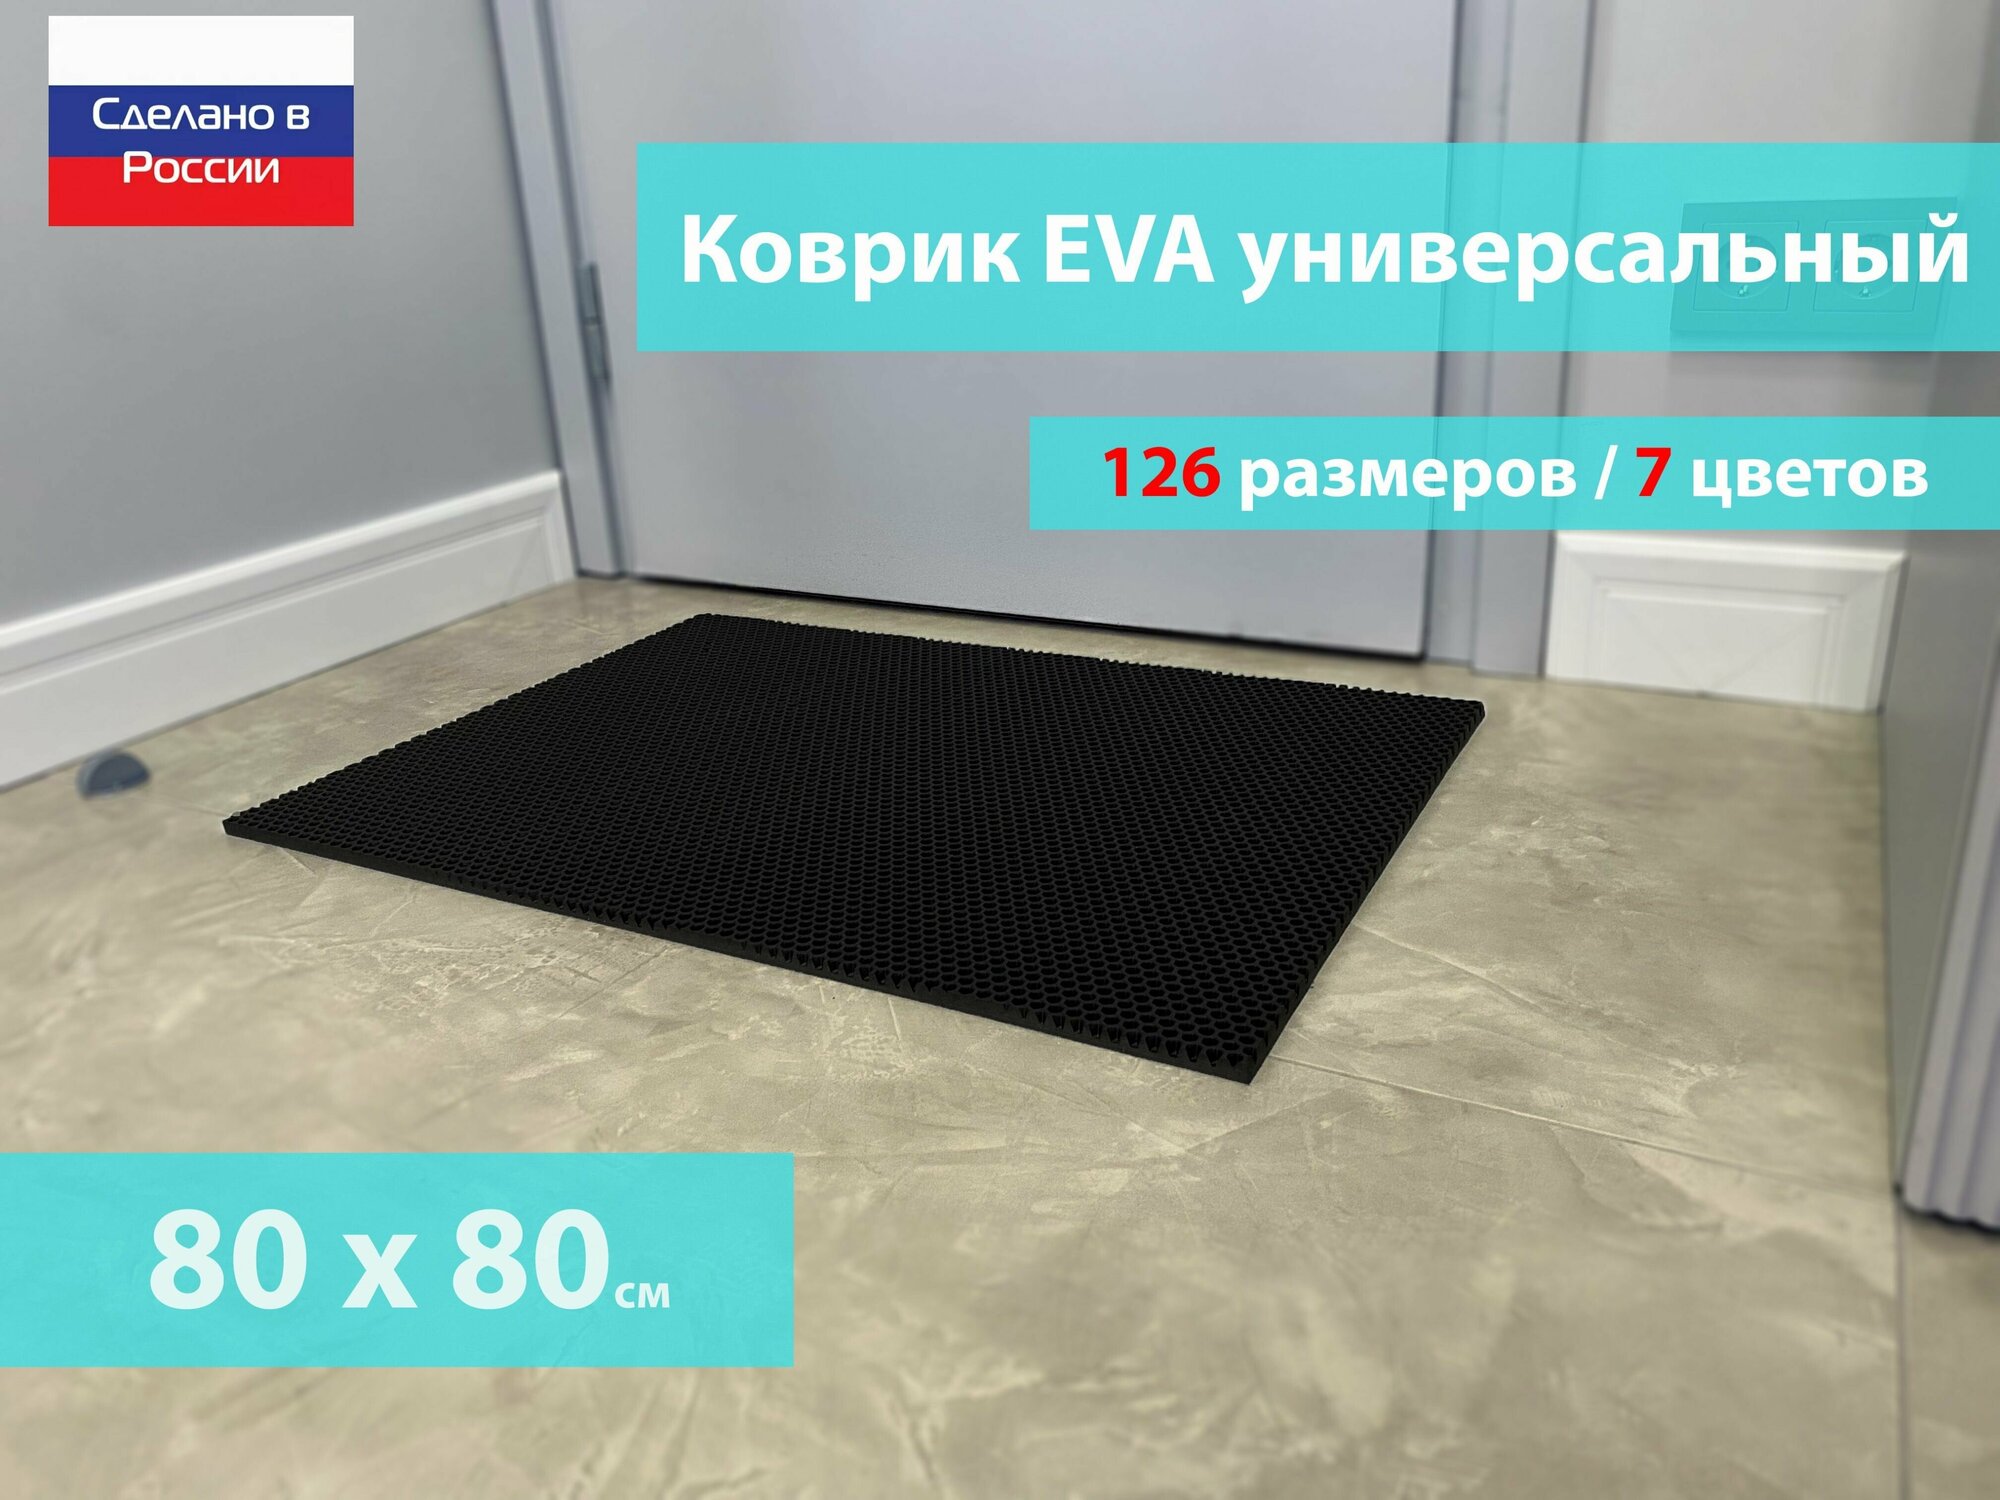 Коврик придверный EVA (ЕВА) в прихожую для обуви / Ковер ЭВА на пол перед дверью/ черный / размер 80 х 80 см